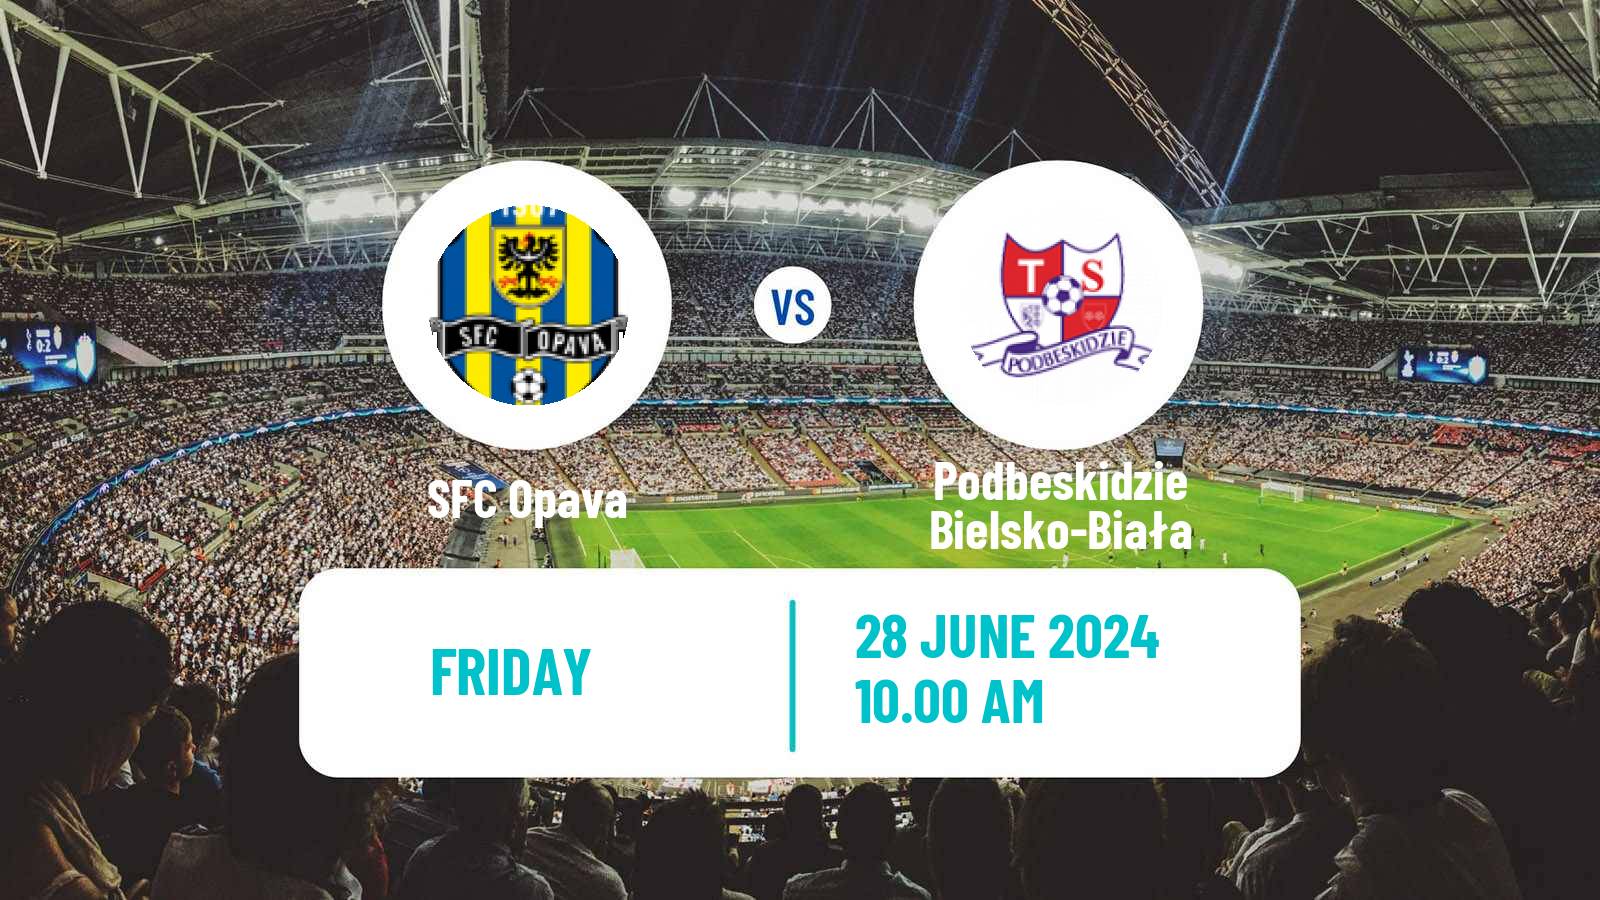 Soccer Club Friendly Opava - Podbeskidzie Bielsko-Biała